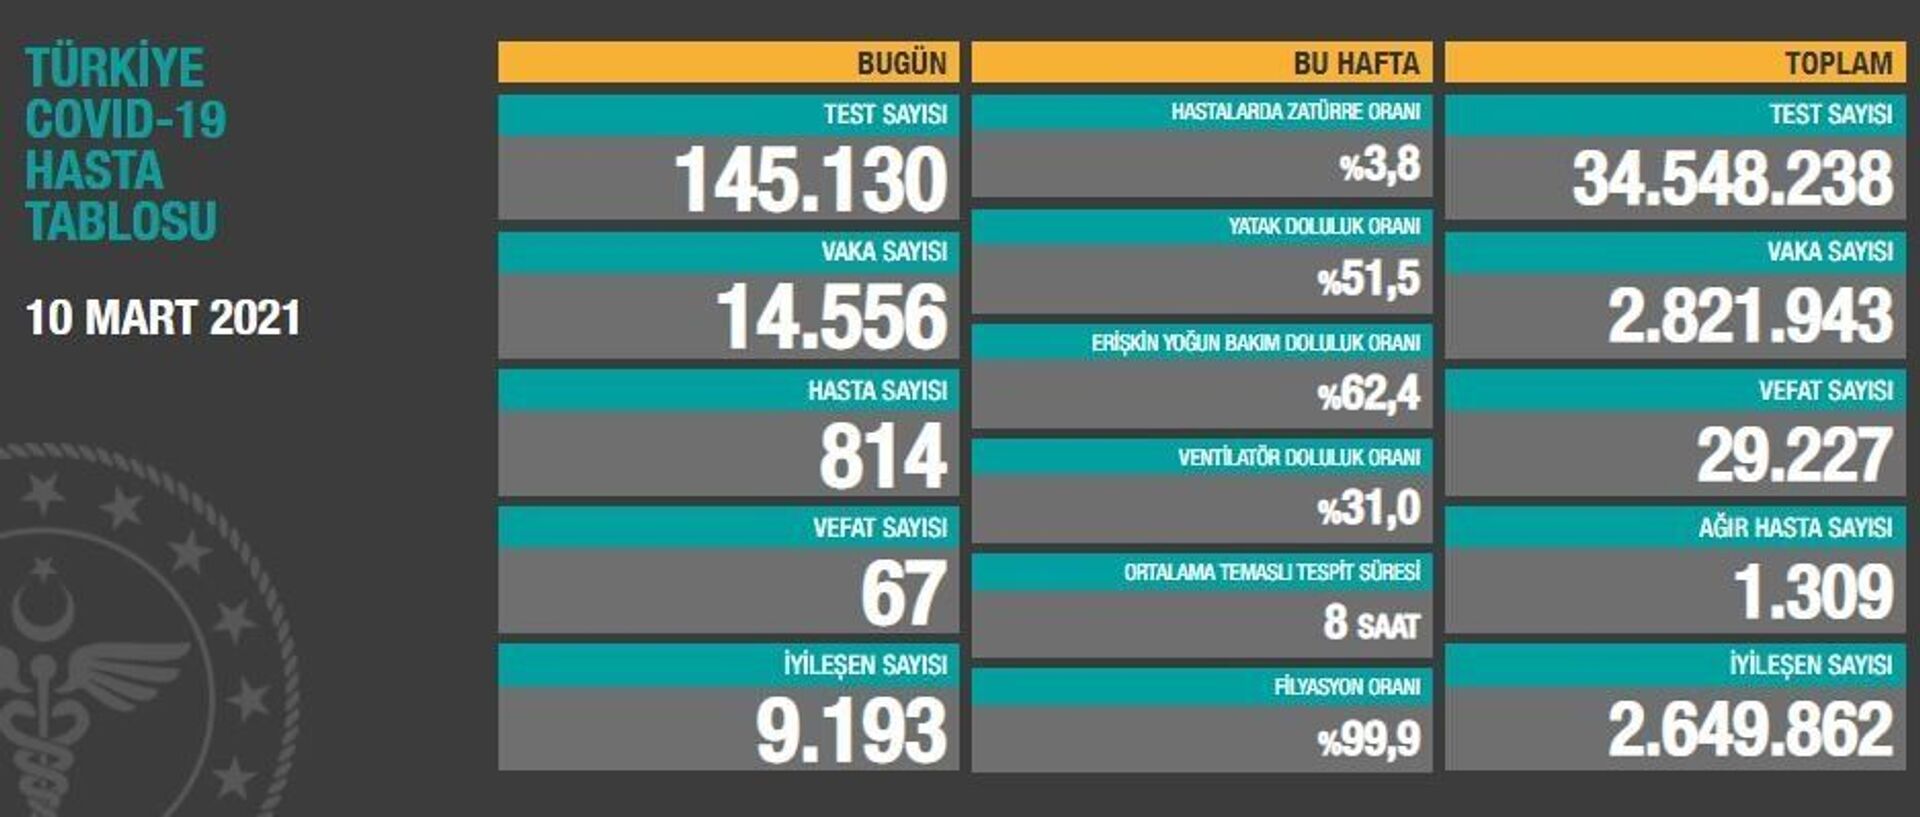 Türkiye'de son 24 saatte koronavirüsten 67 kişi hayatını kaybetti, 14 bin 556 kişinin testi pozitif çıktı - Sputnik Türkiye, 1920, 10.03.2021